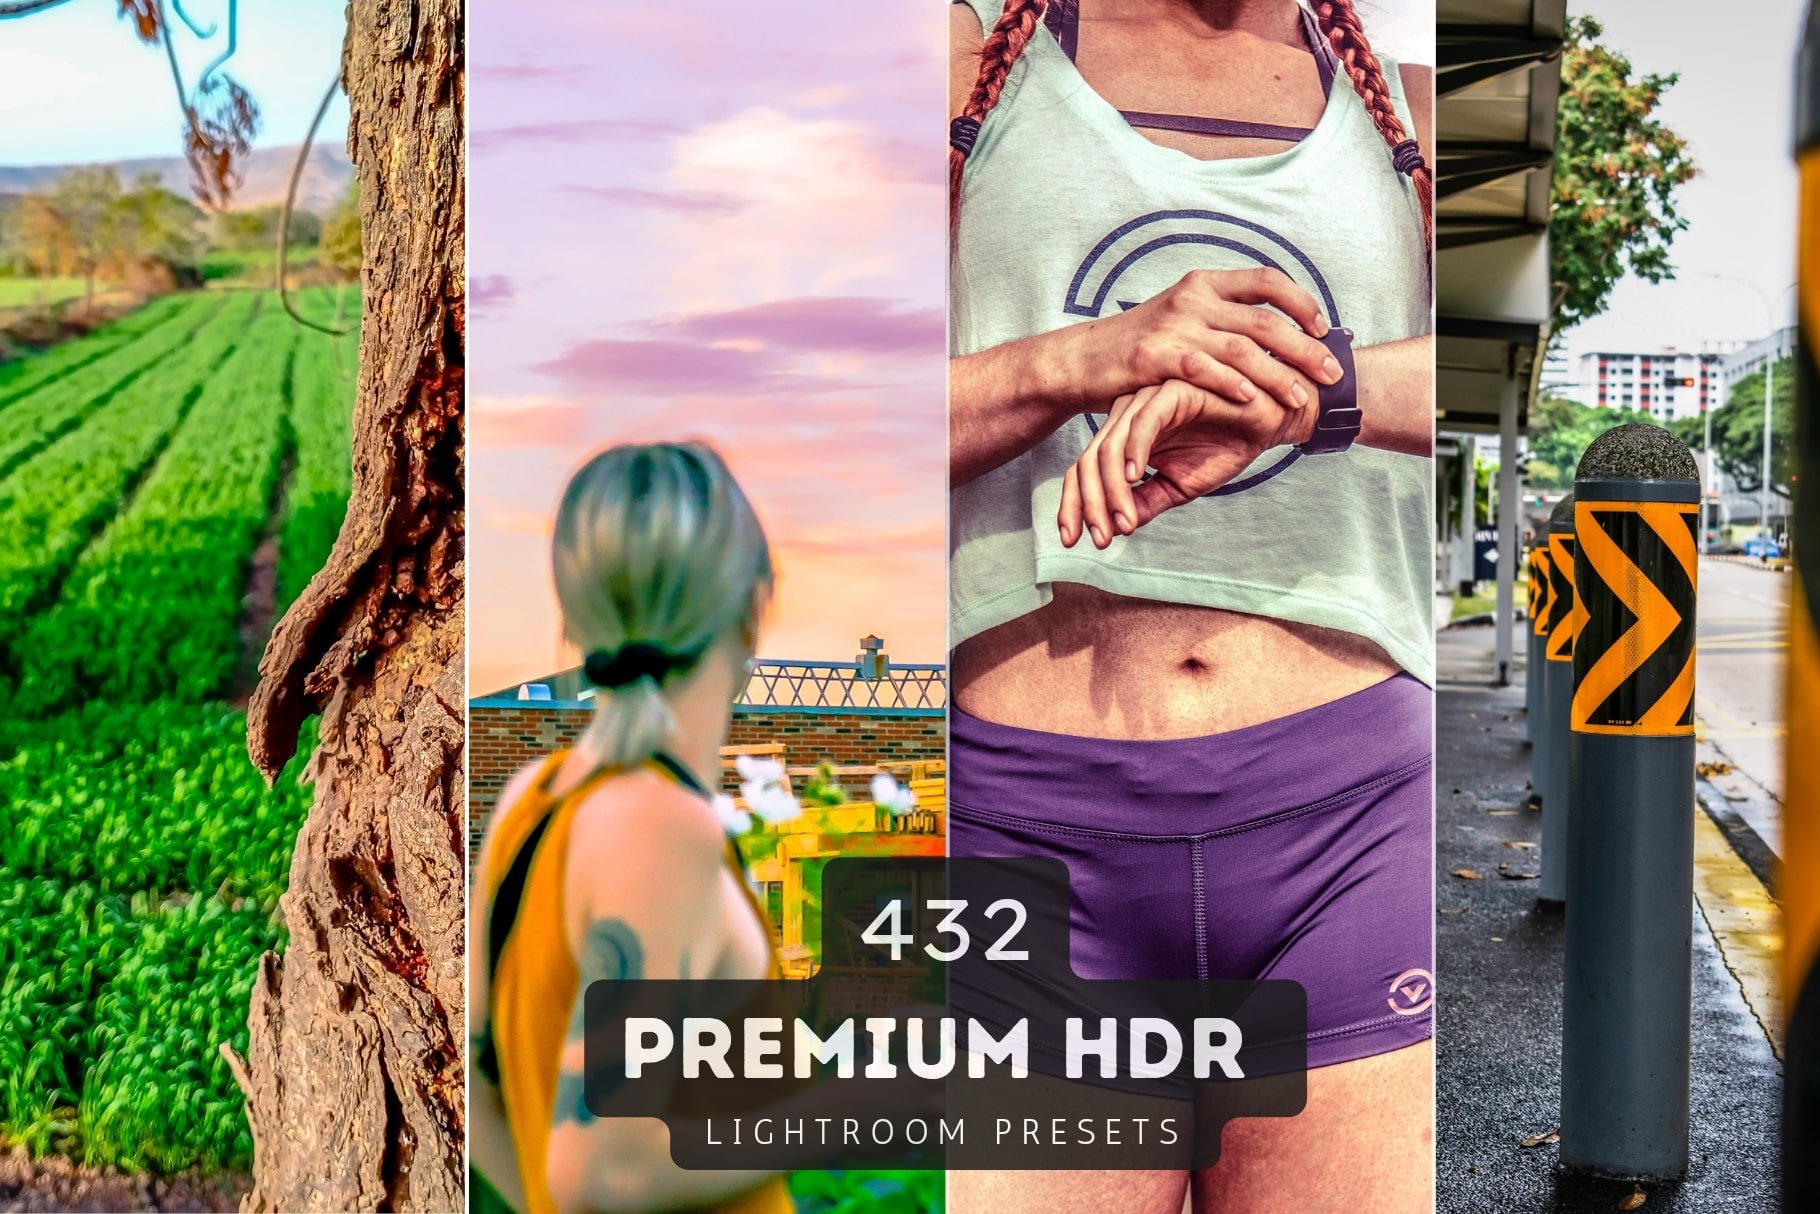 432 HDR Lightroom Presets Bundlecover image.